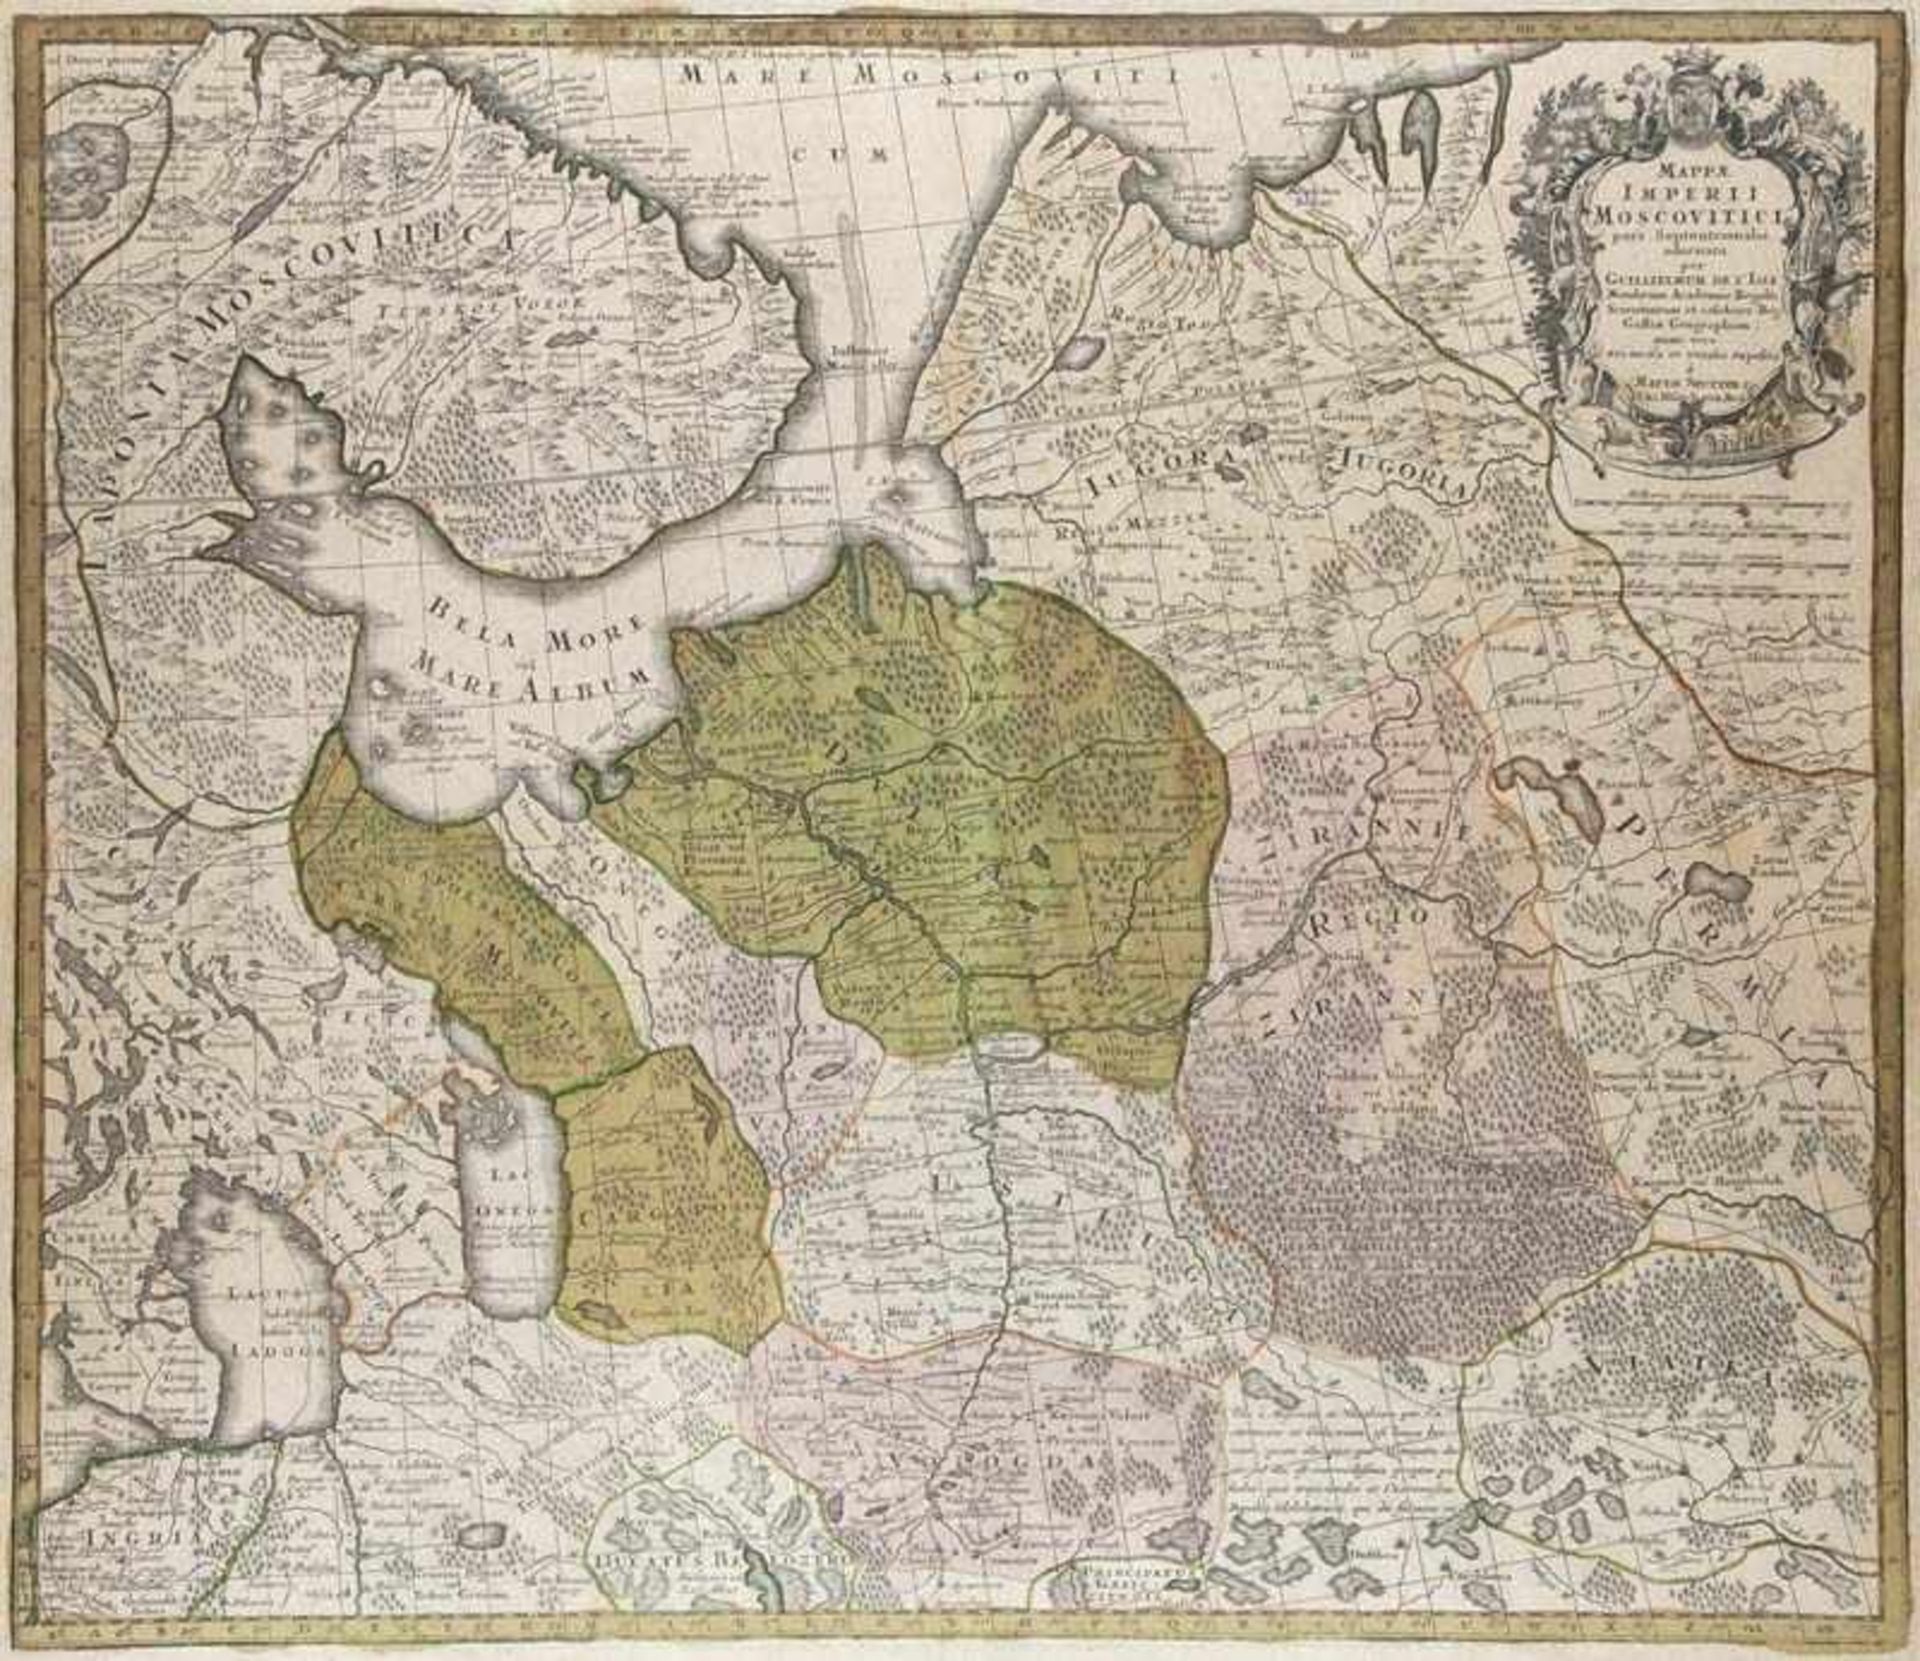 Russland - - Mappae Imperii Moscovitici pars Septentrionalis. Teilkolor. Kupferstichkarte von M.